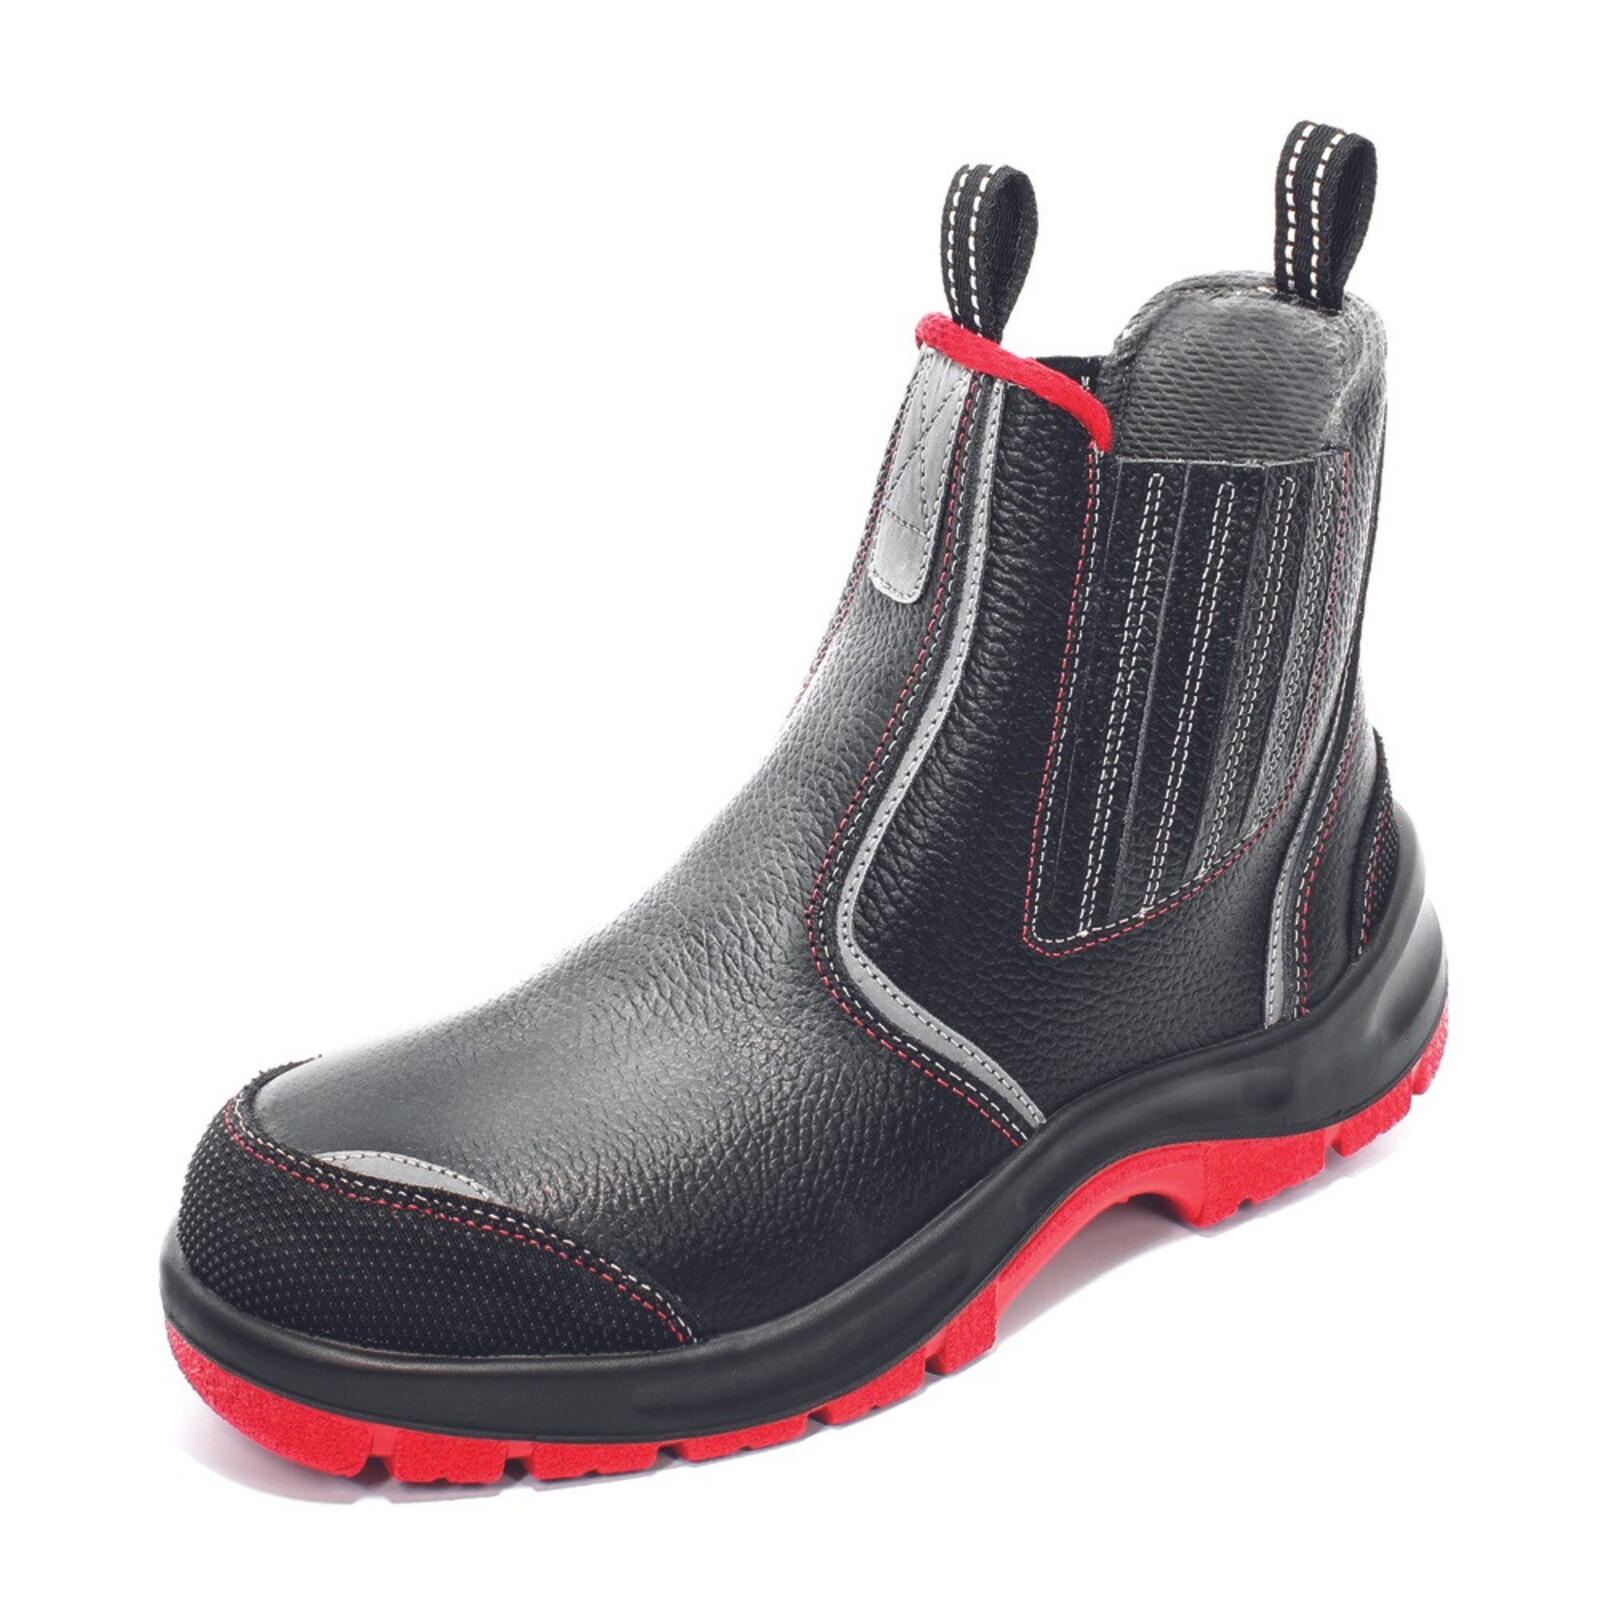 Bezpečnostná členková obuv Panda Strong Nuovo Eurotech MF S3 SRC - veľkosť: 38, farba: čierna/červená